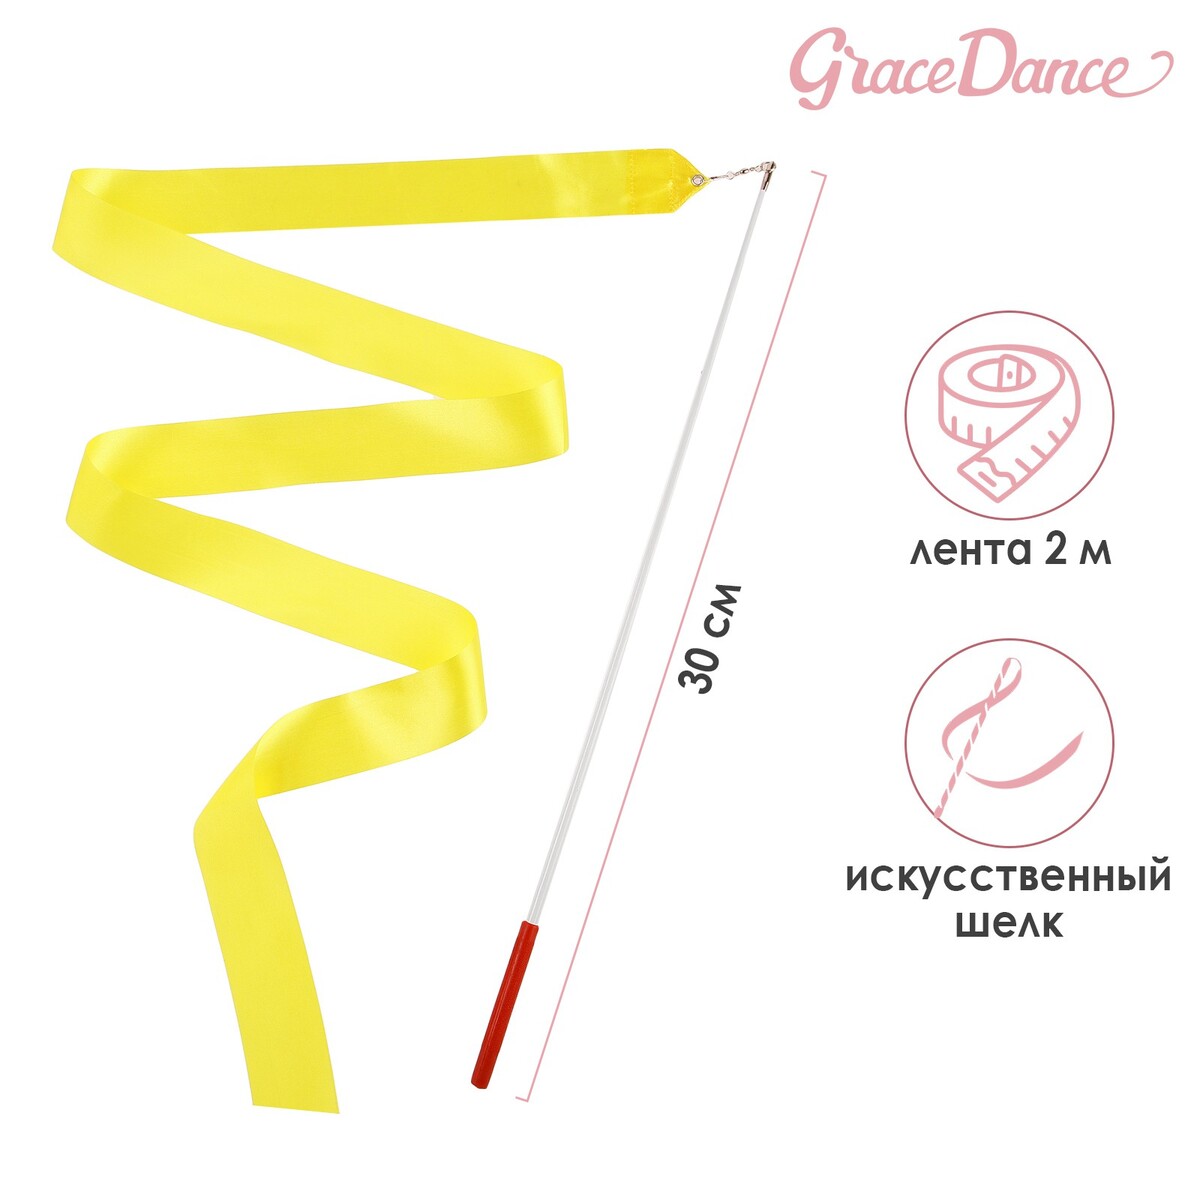 Лента для художественной гимнастики с палочкой grace dance, 2 м, цвет желтый лента фиксации rockbros для перевозки и хранения велосипедов зеленый rb 51210071002